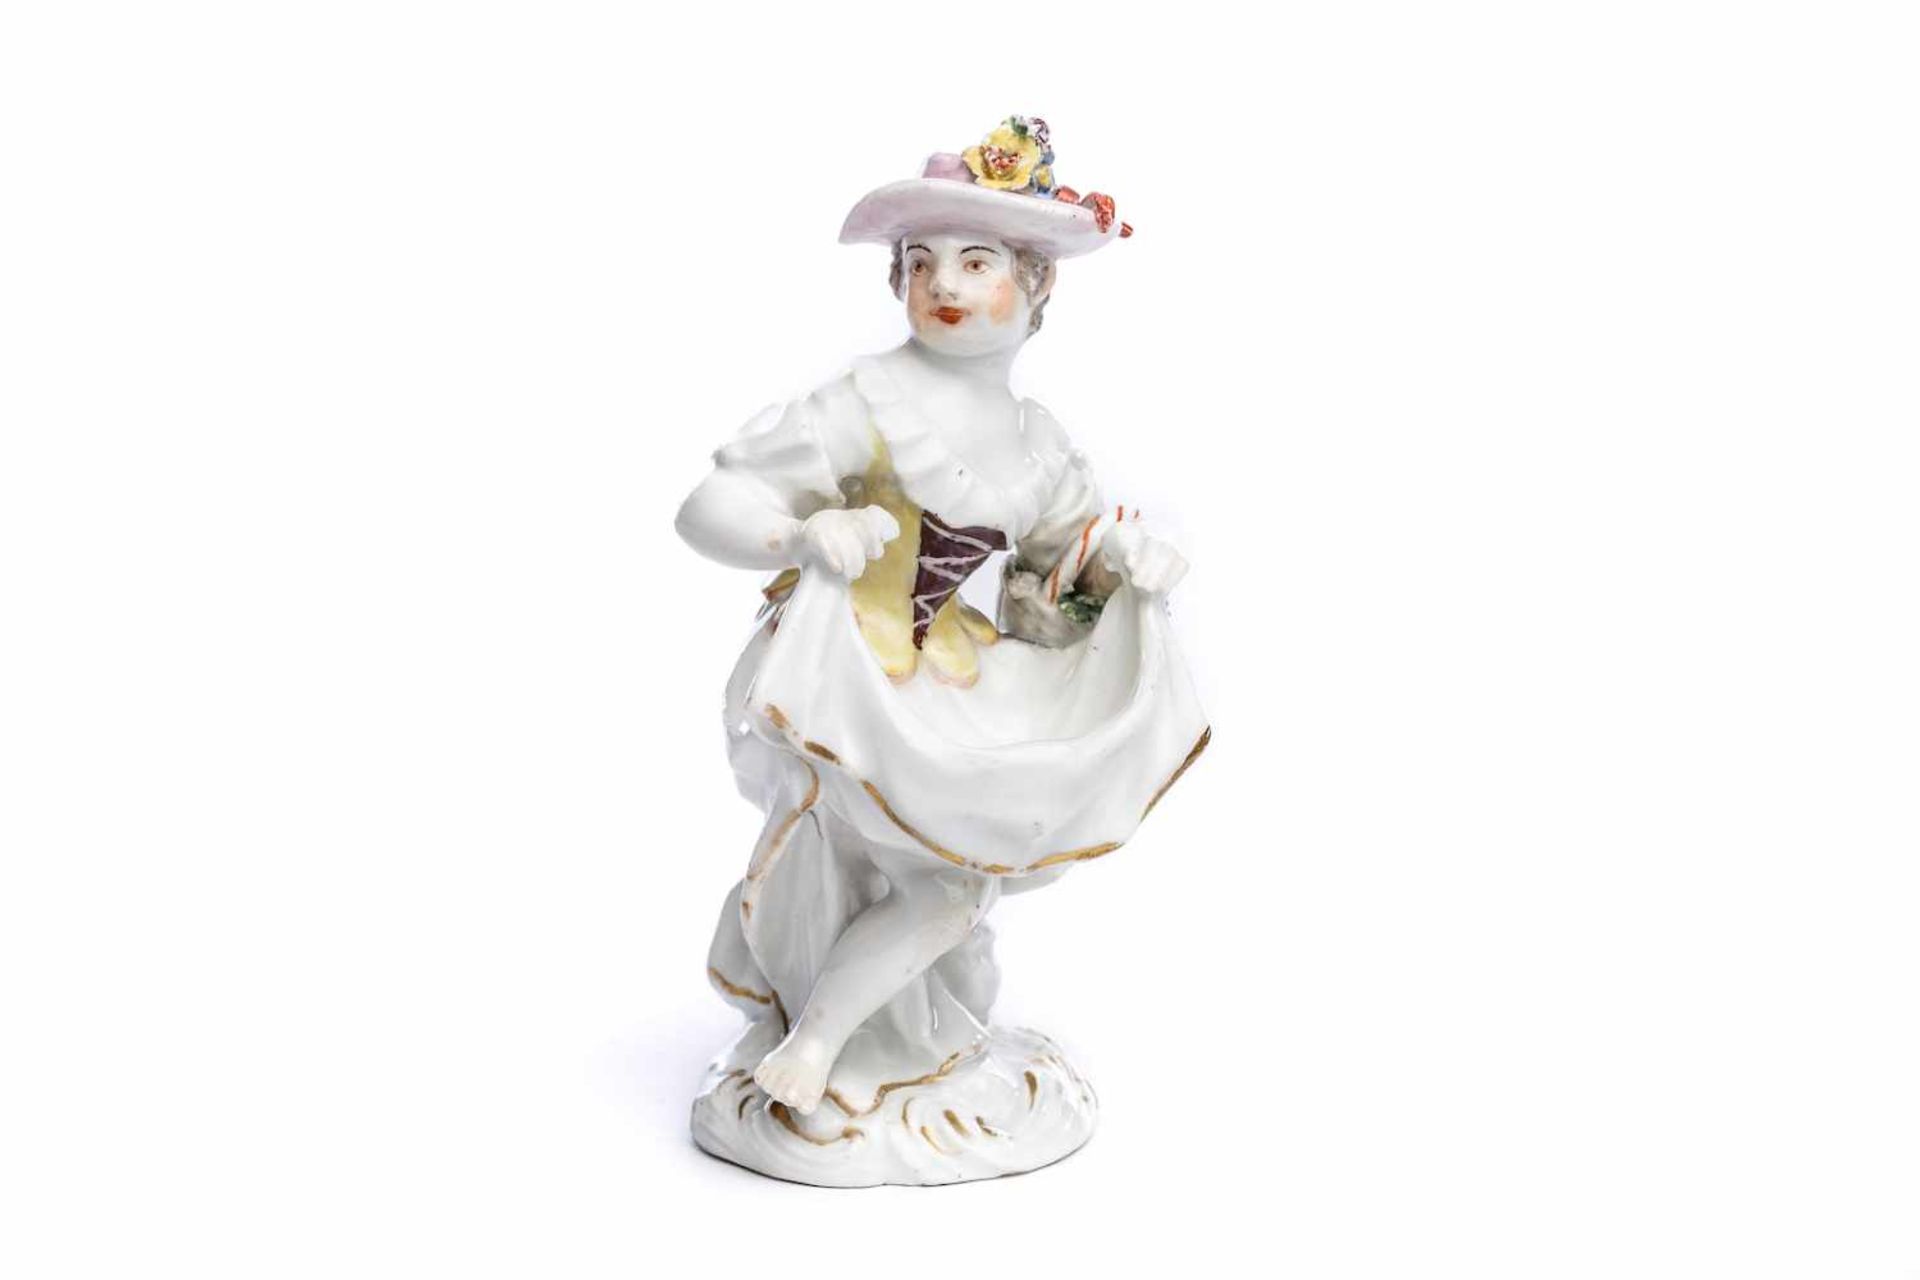 Porzellanfigur "Mädchen mit Schürze", Meissen 1750Porzellanfigur "Mädchen mit Schürze", Meissen